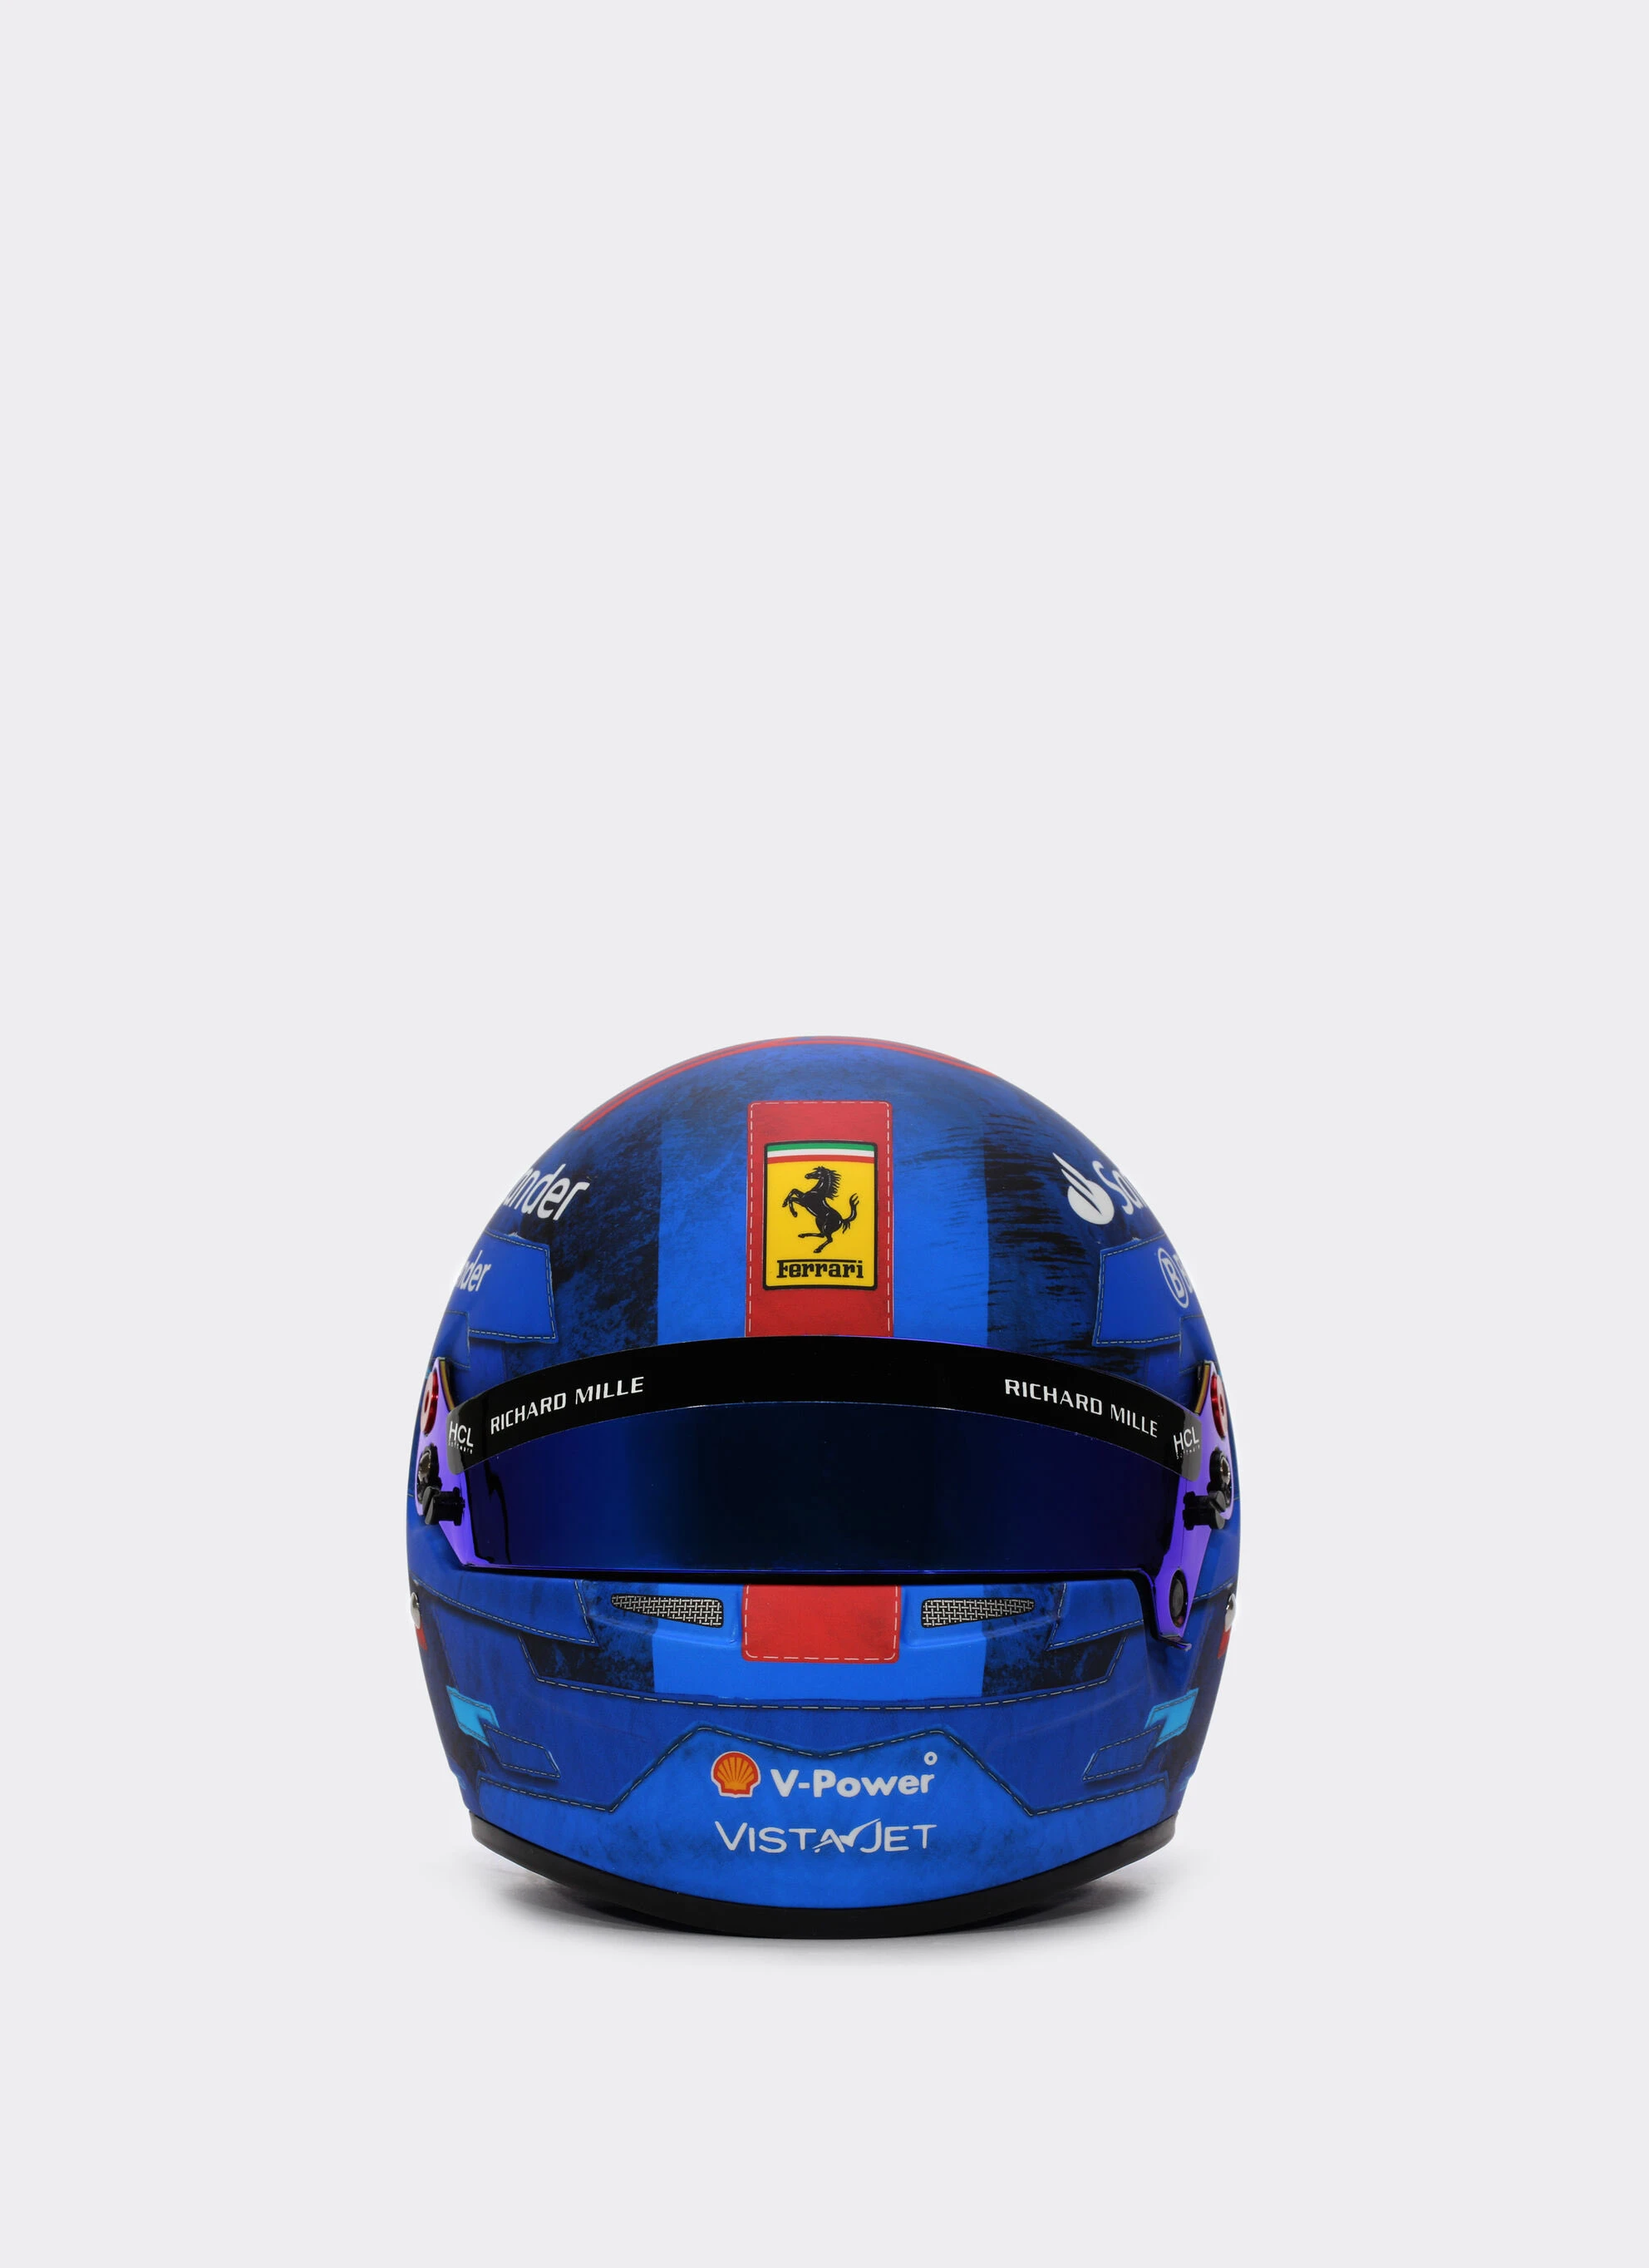 Ferrari'nin Miami GP'sinde kullanacağı özel renk düzeni gallery image 10